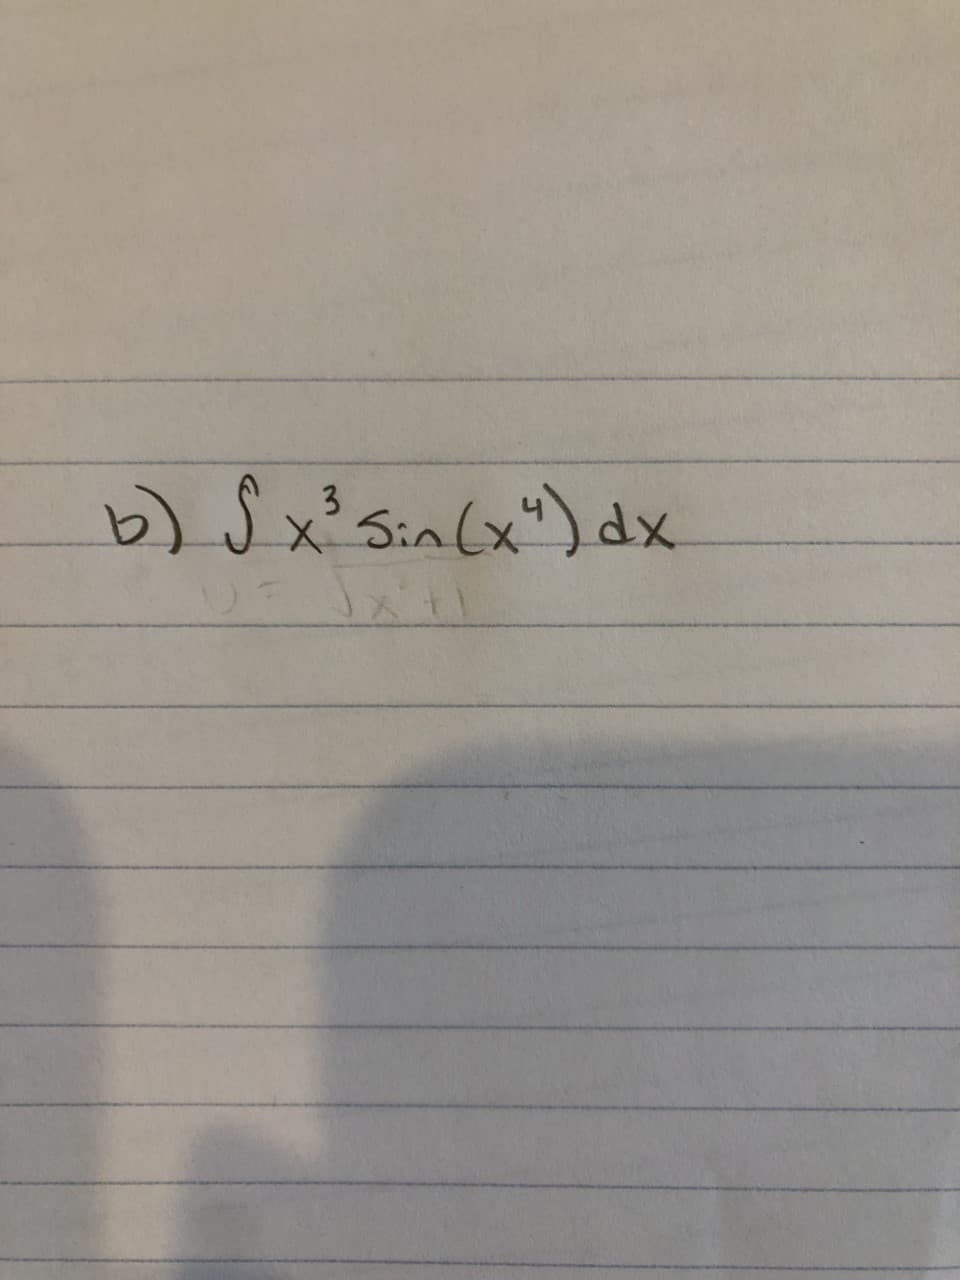 b) $ x² Sin(x") dx
3
